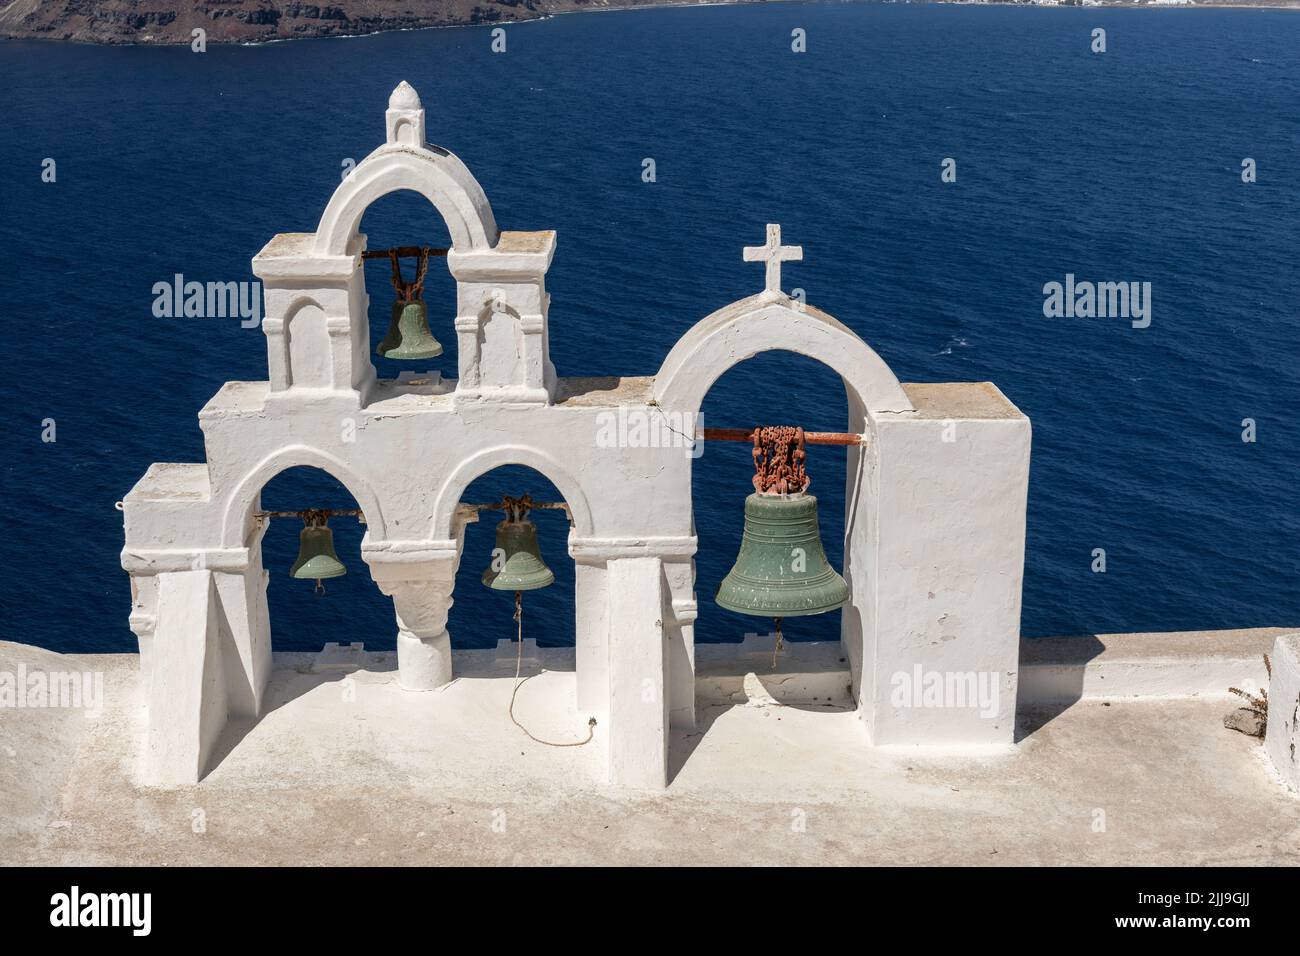 Le 4 campane verdi di Santa Ekaterini Oia Santa Chiesa Ortodossa contro il blu del Mar Egeo, Oia, Santorini, Cicladi, Grecia, Europa Foto Stock